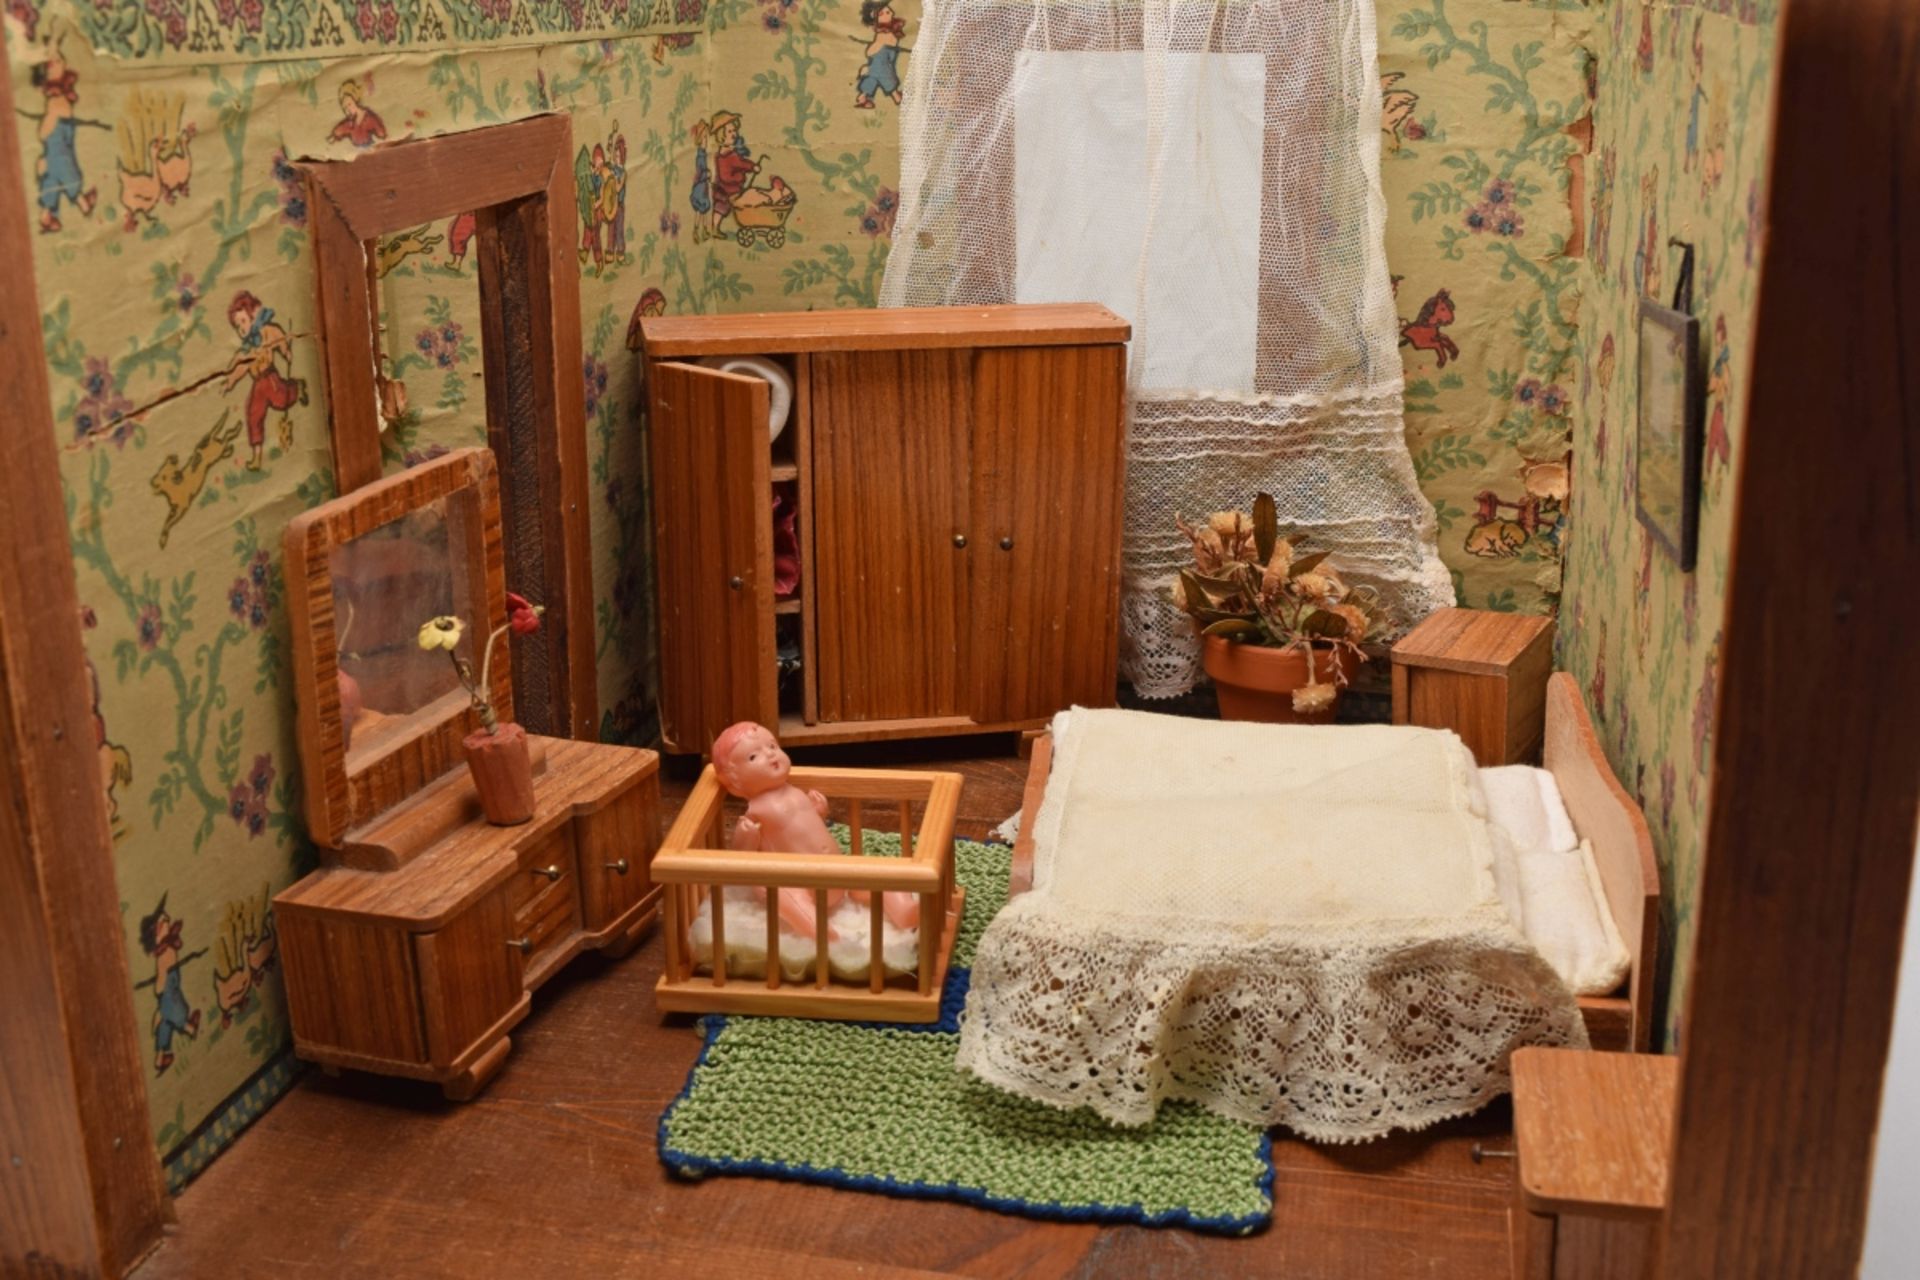 Puppenstube dreiseitiges Gehäuse mit farbiger Tapete, zwei Zimmer, mit Stuben- und Schlafzimmermö - Bild 3 aus 4